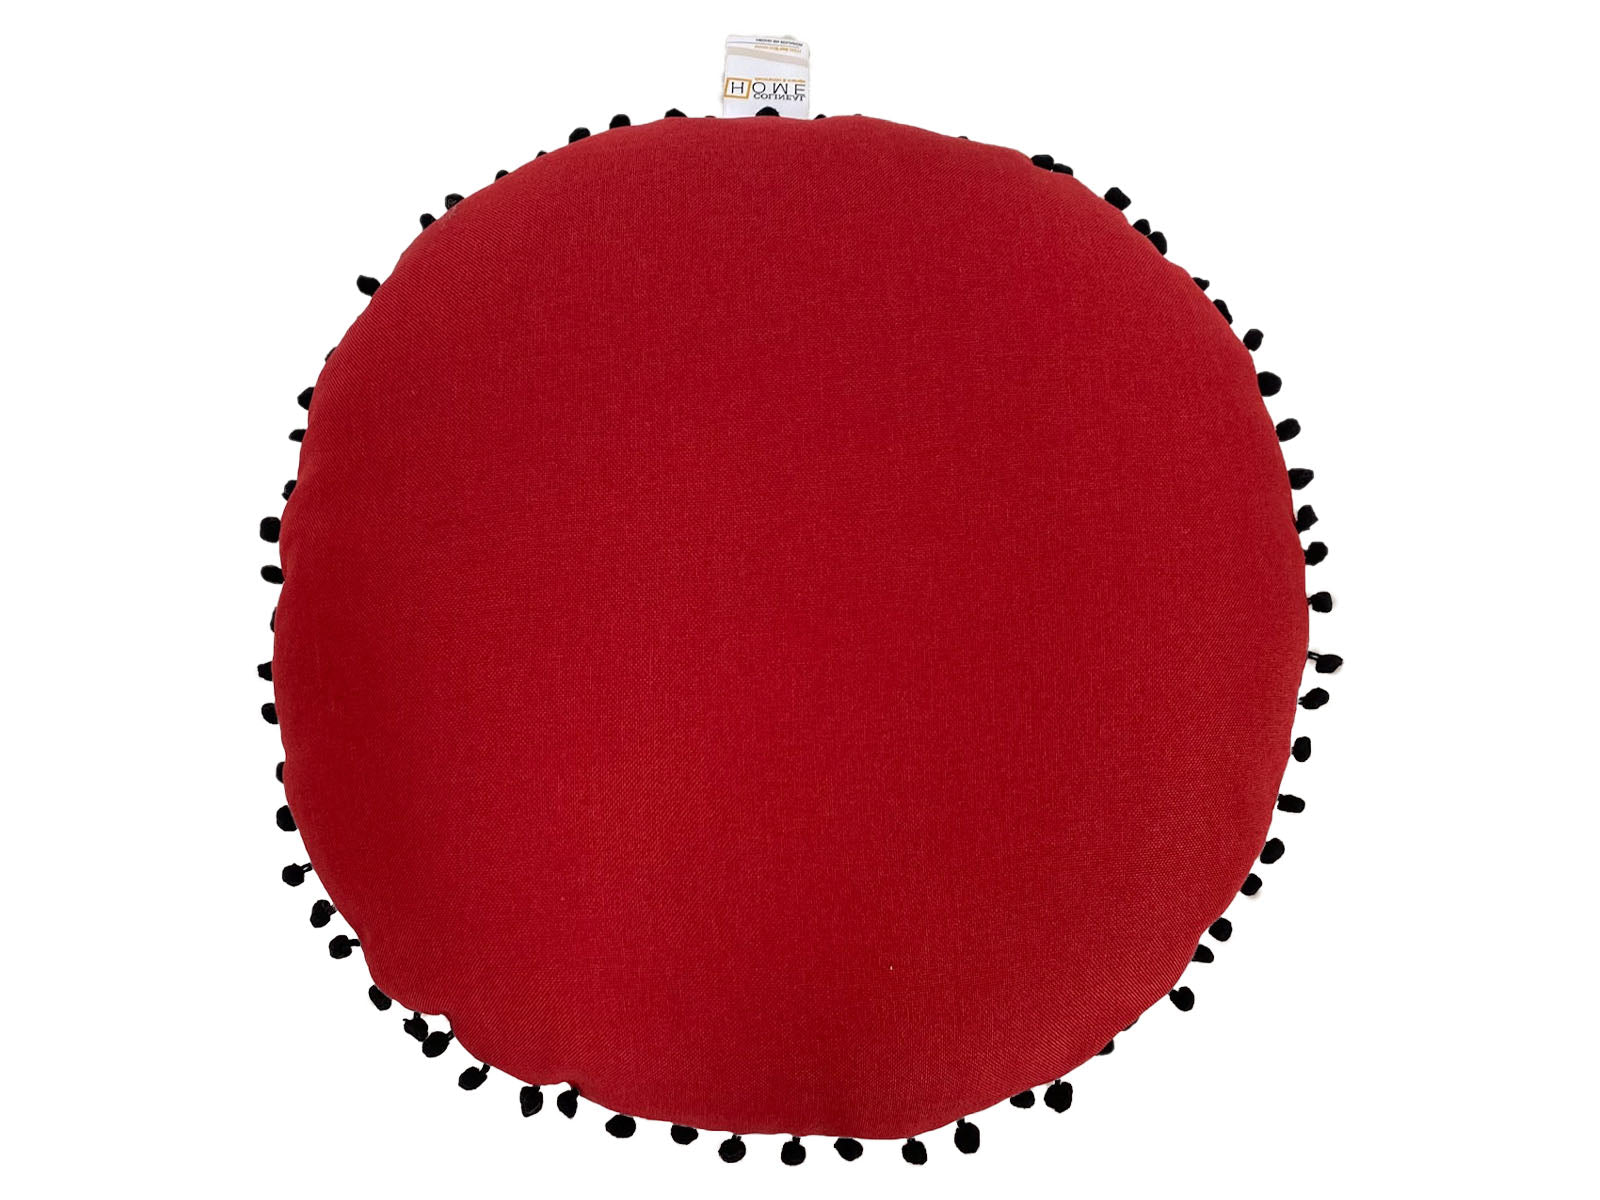 Cojin Borlitas Rojo Ref: DP 2020 0003 5 50cm Diametro